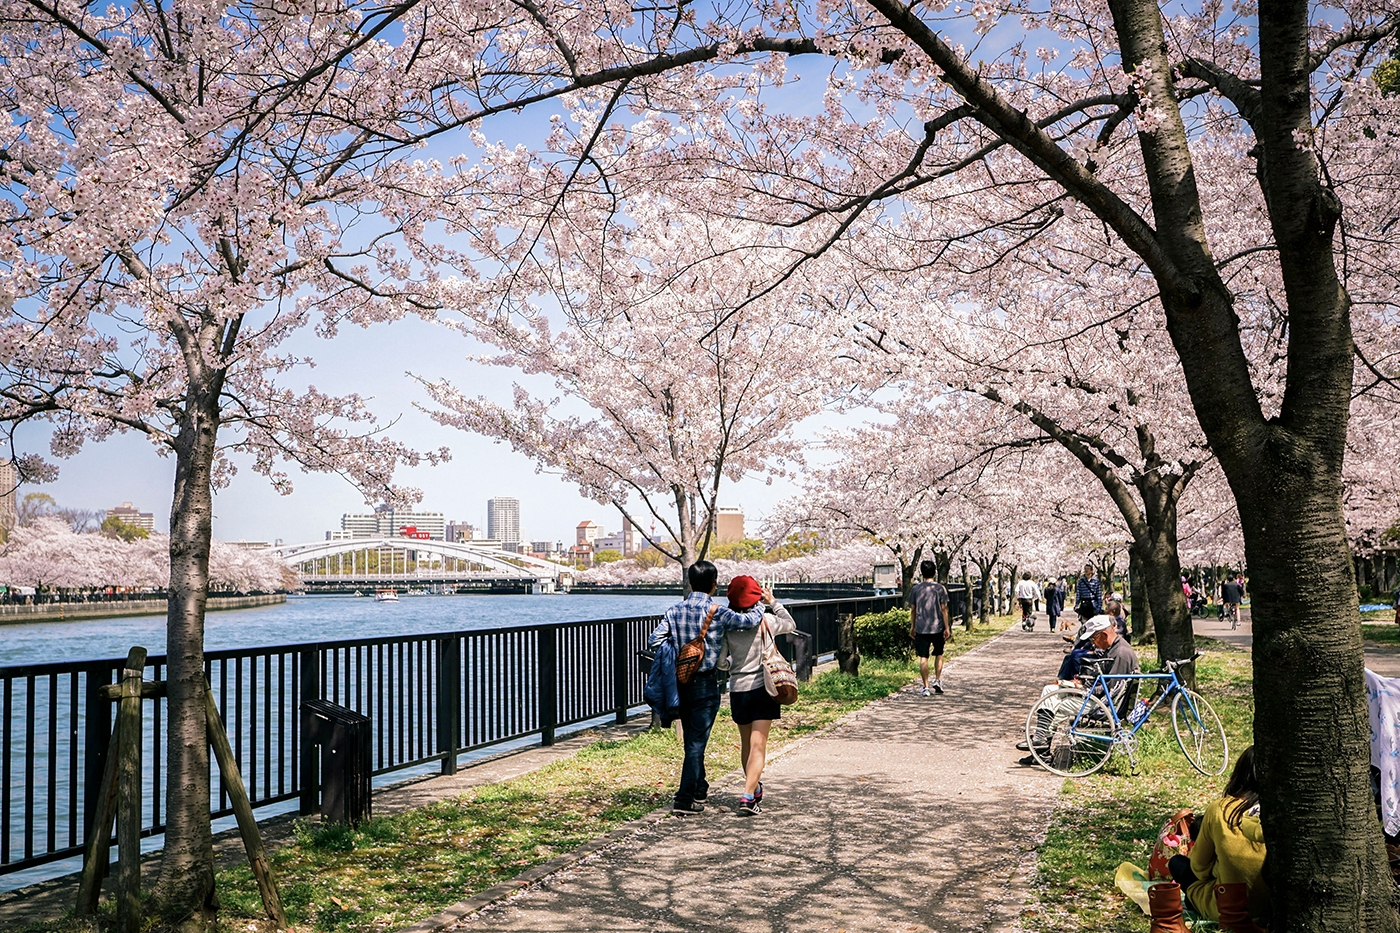 아름다운 게마 사쿠라노미야 공원을 따라 거닐면 분홍빛으로 물든 강변 풍경을 감상할 수 있다